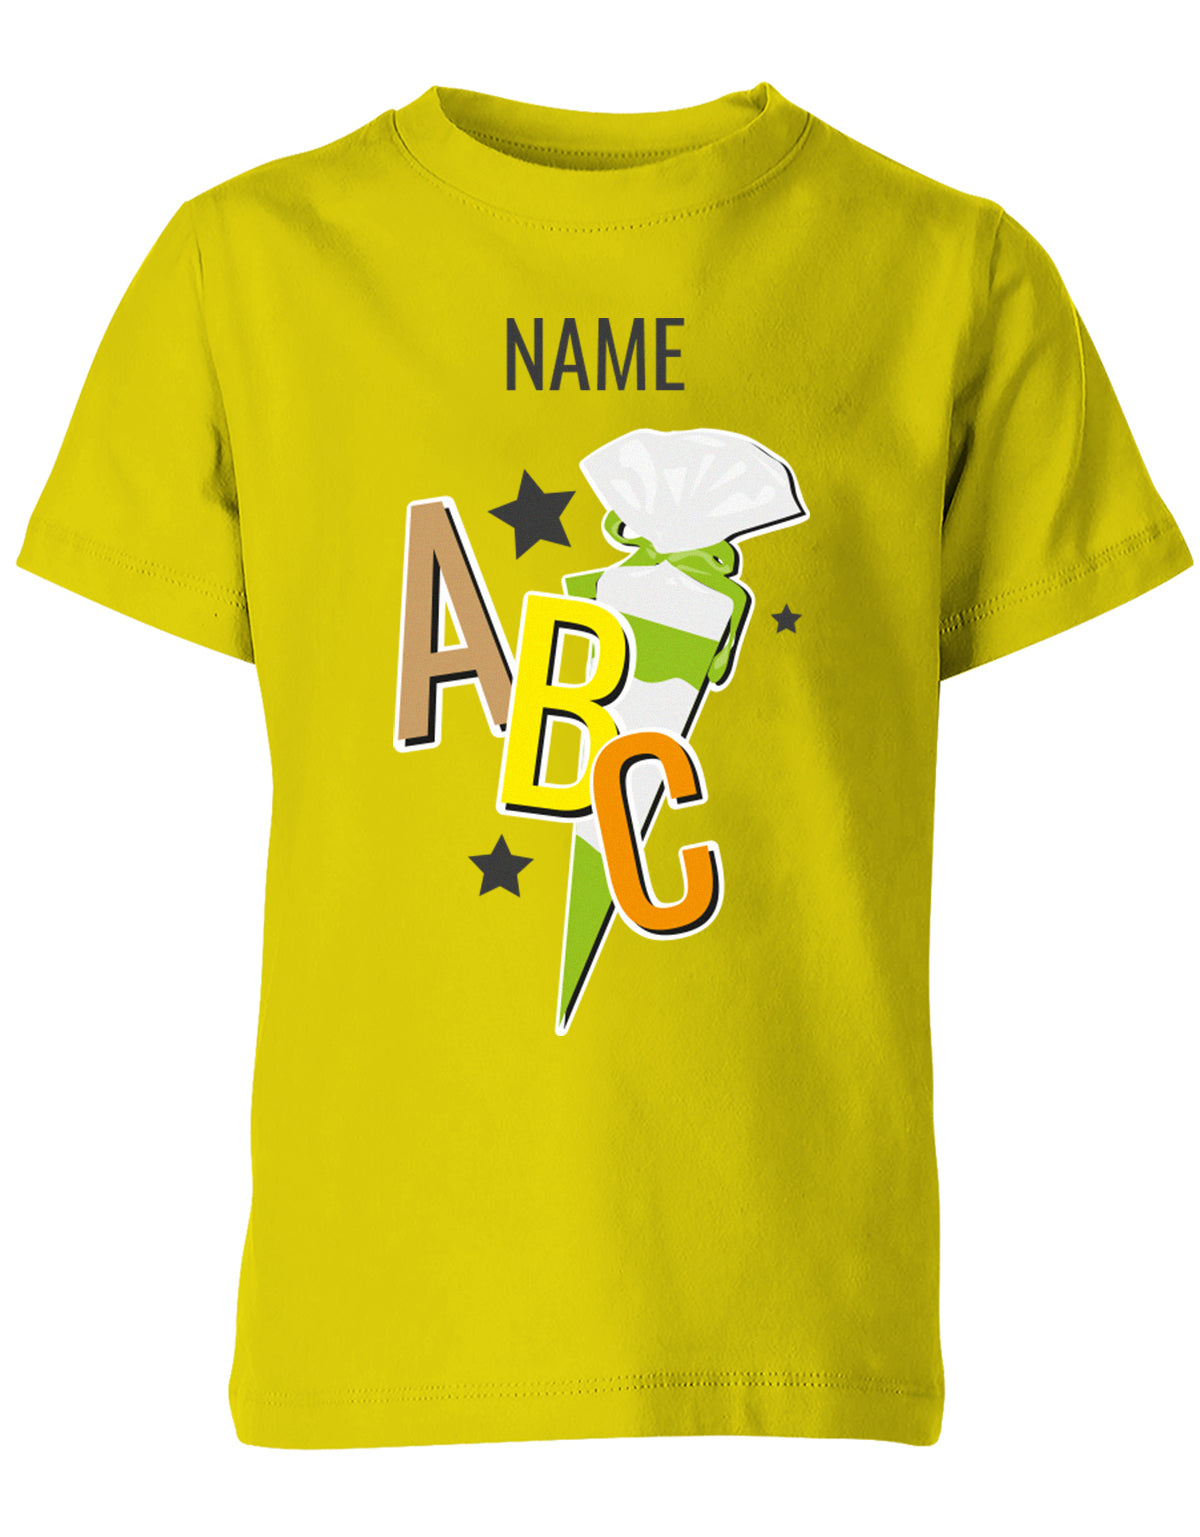 Schulkind ABC Schultüte Große Buchstaben Sterne mit Name T-Shirt Gelb